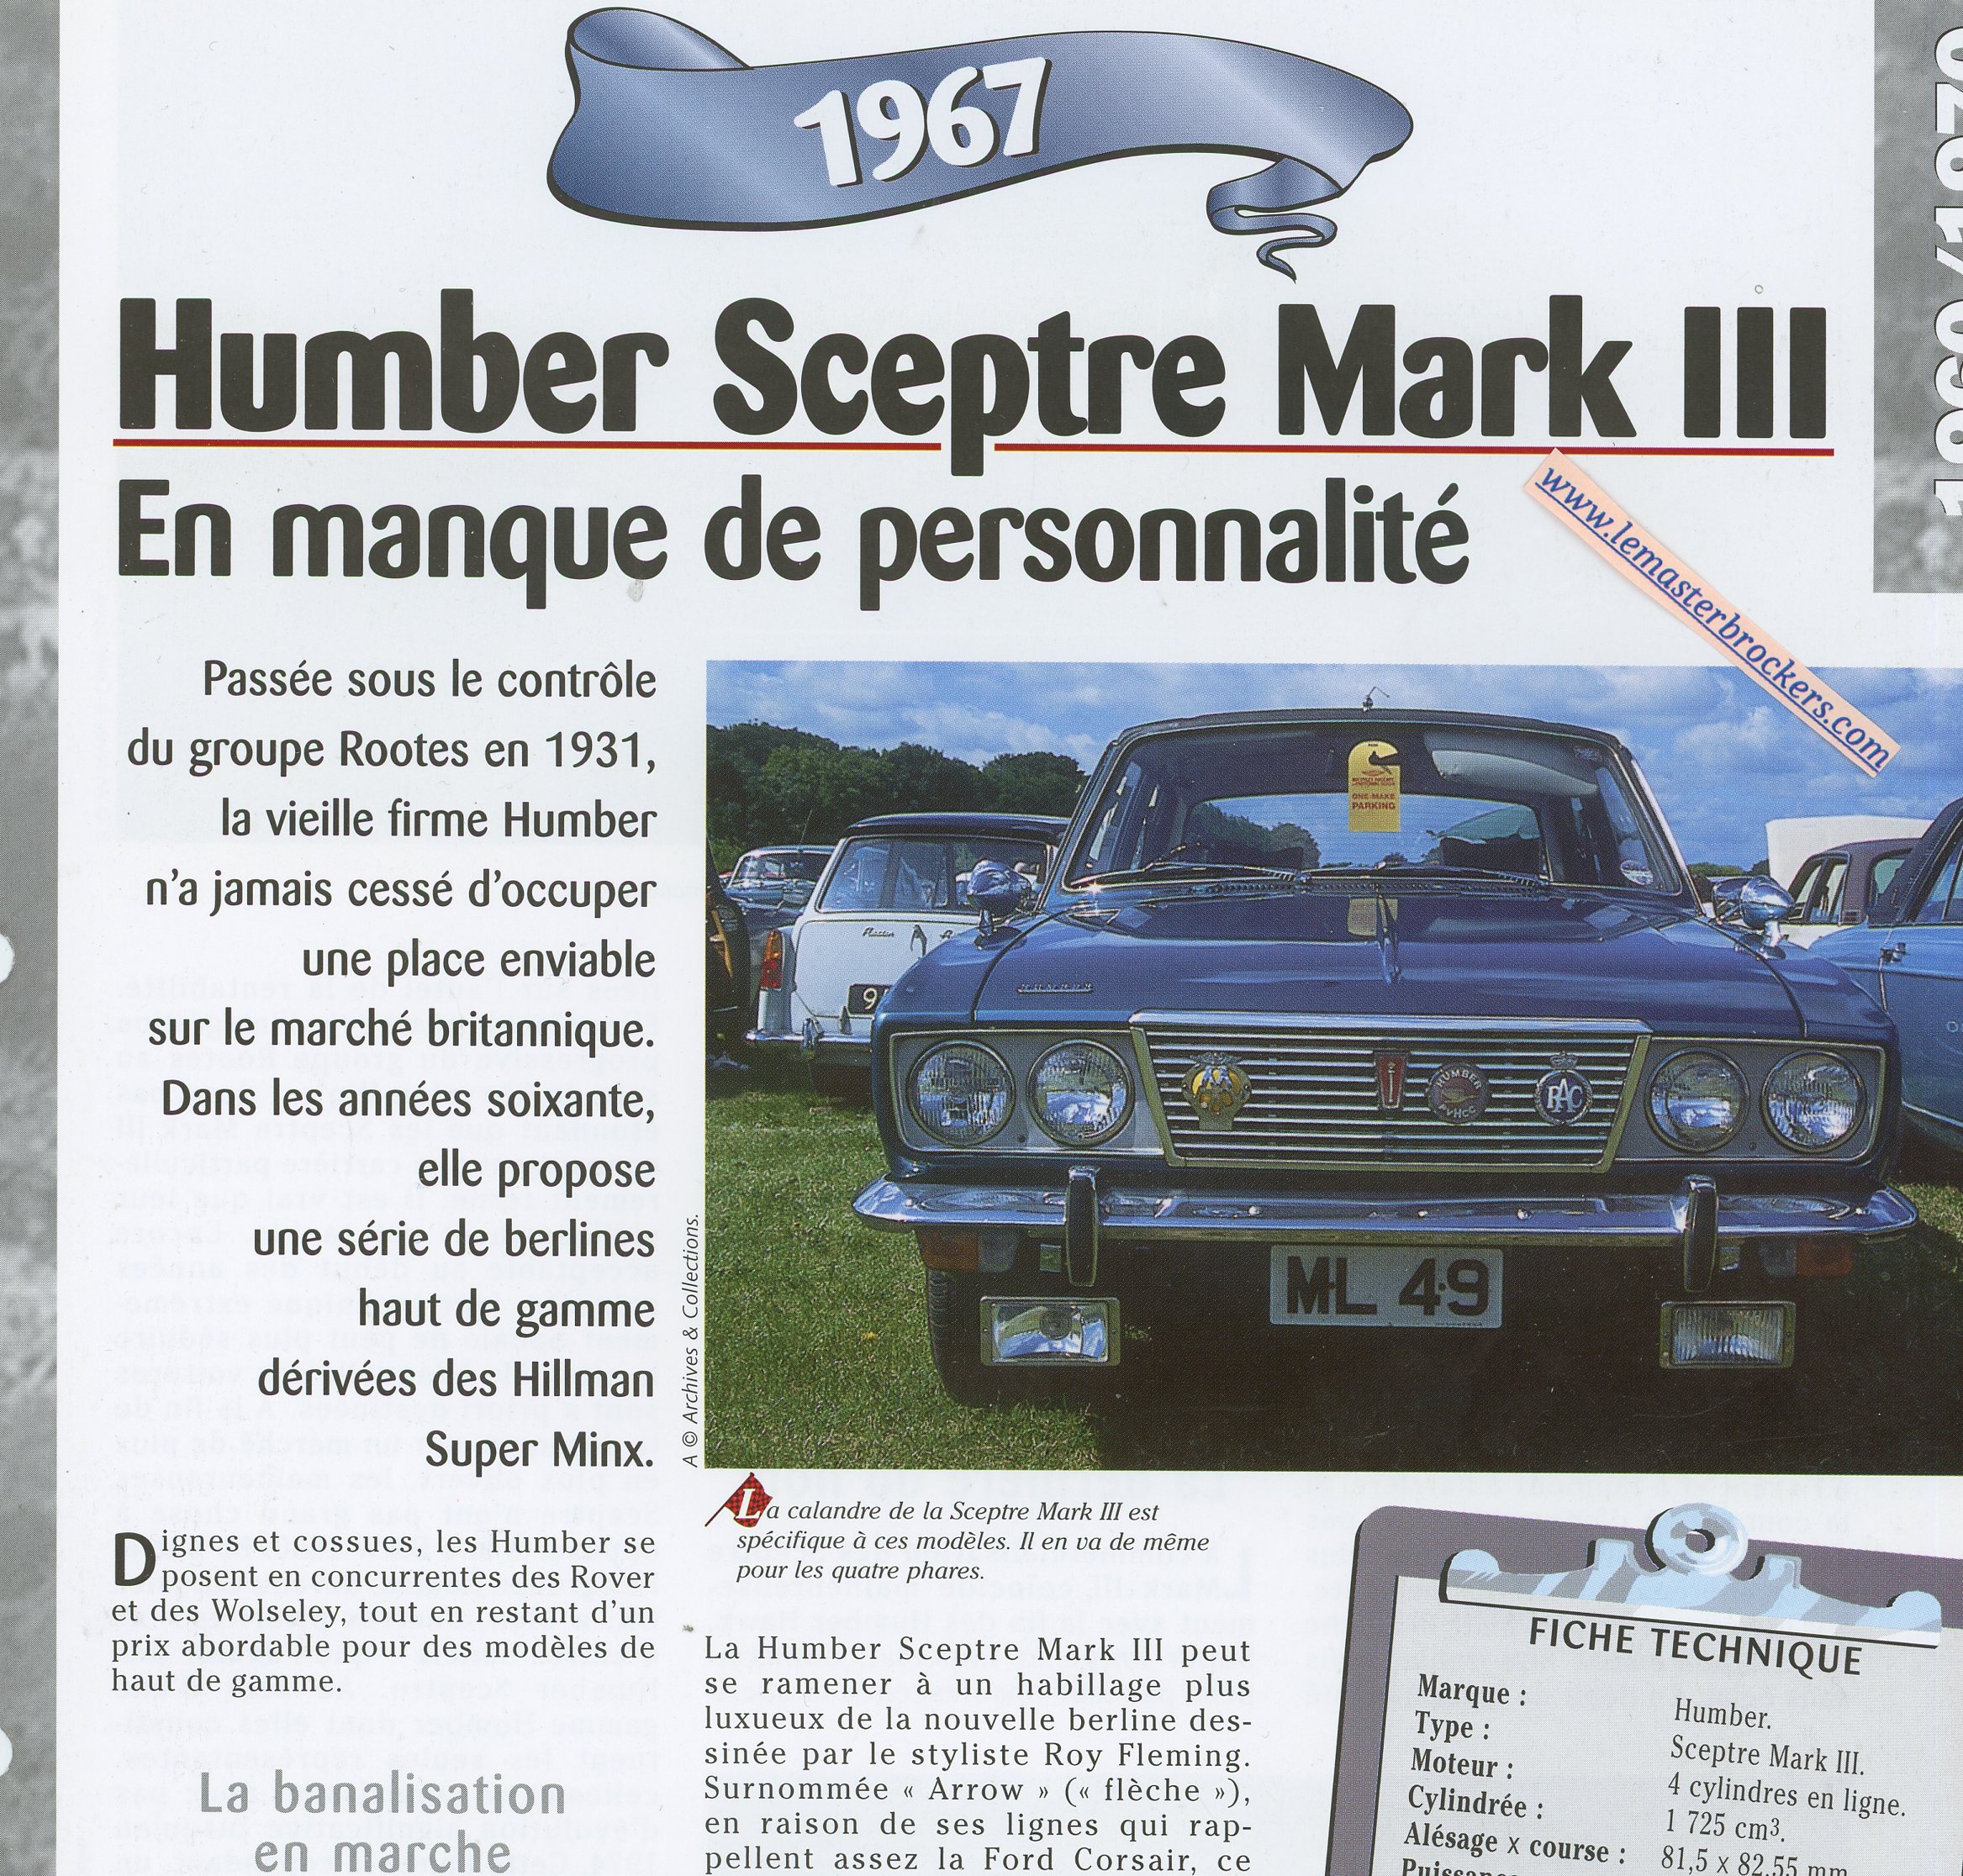 HUMBER-SCEPTRE-MARK-III-MARK3-1967-FICHE-TECHNIQUE-LEMASTERBROCKERS